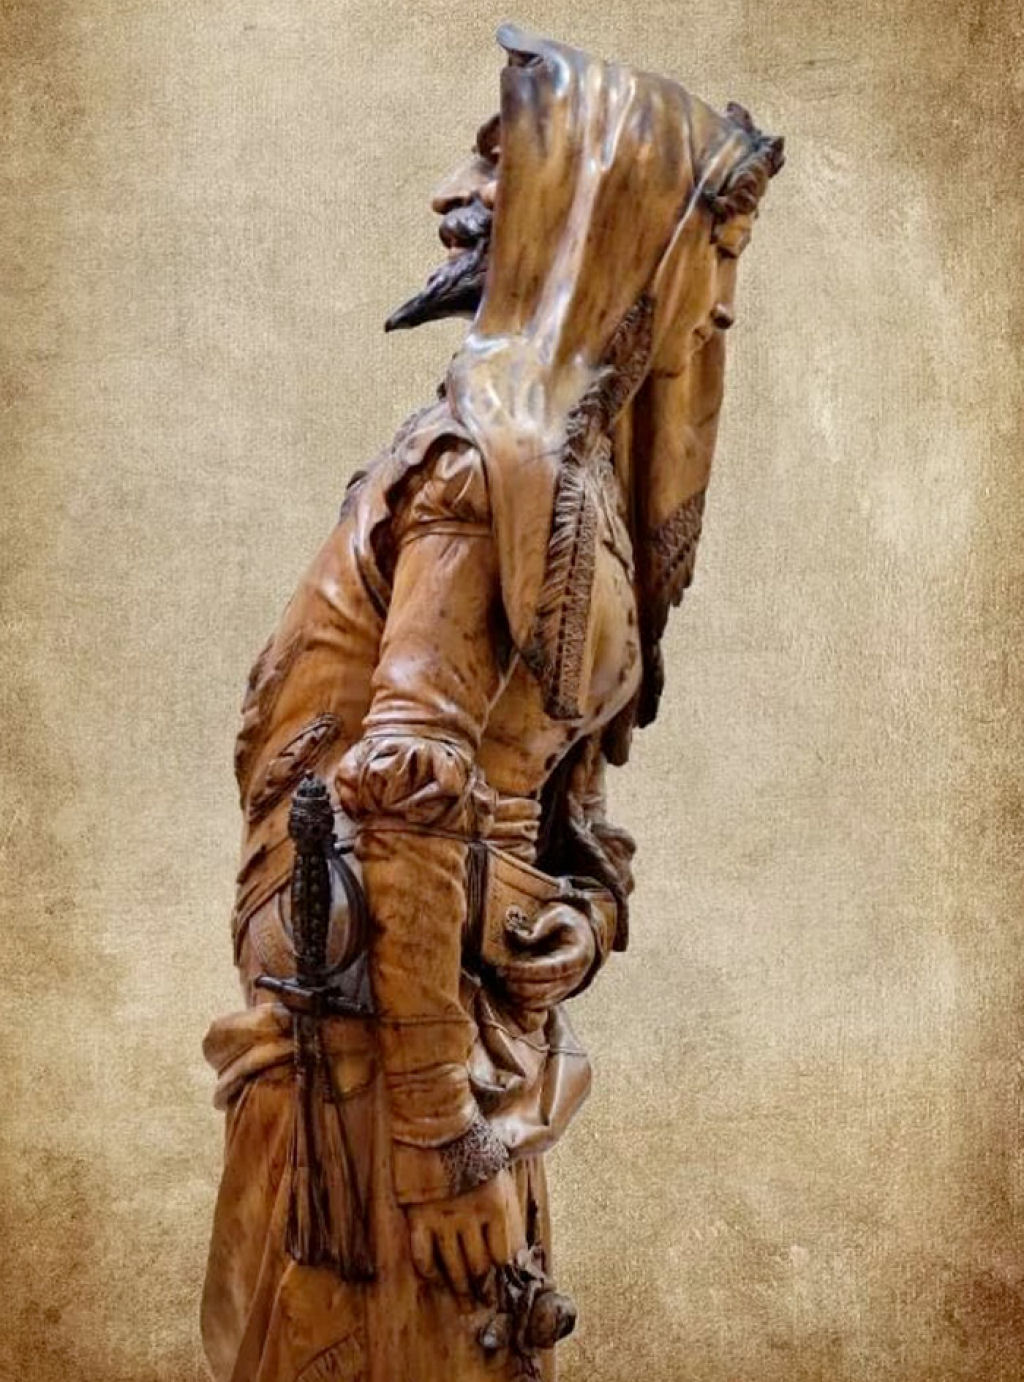 Esta 'escultura dupla' do século 19 conta a história de duas pessoas em lados opostos